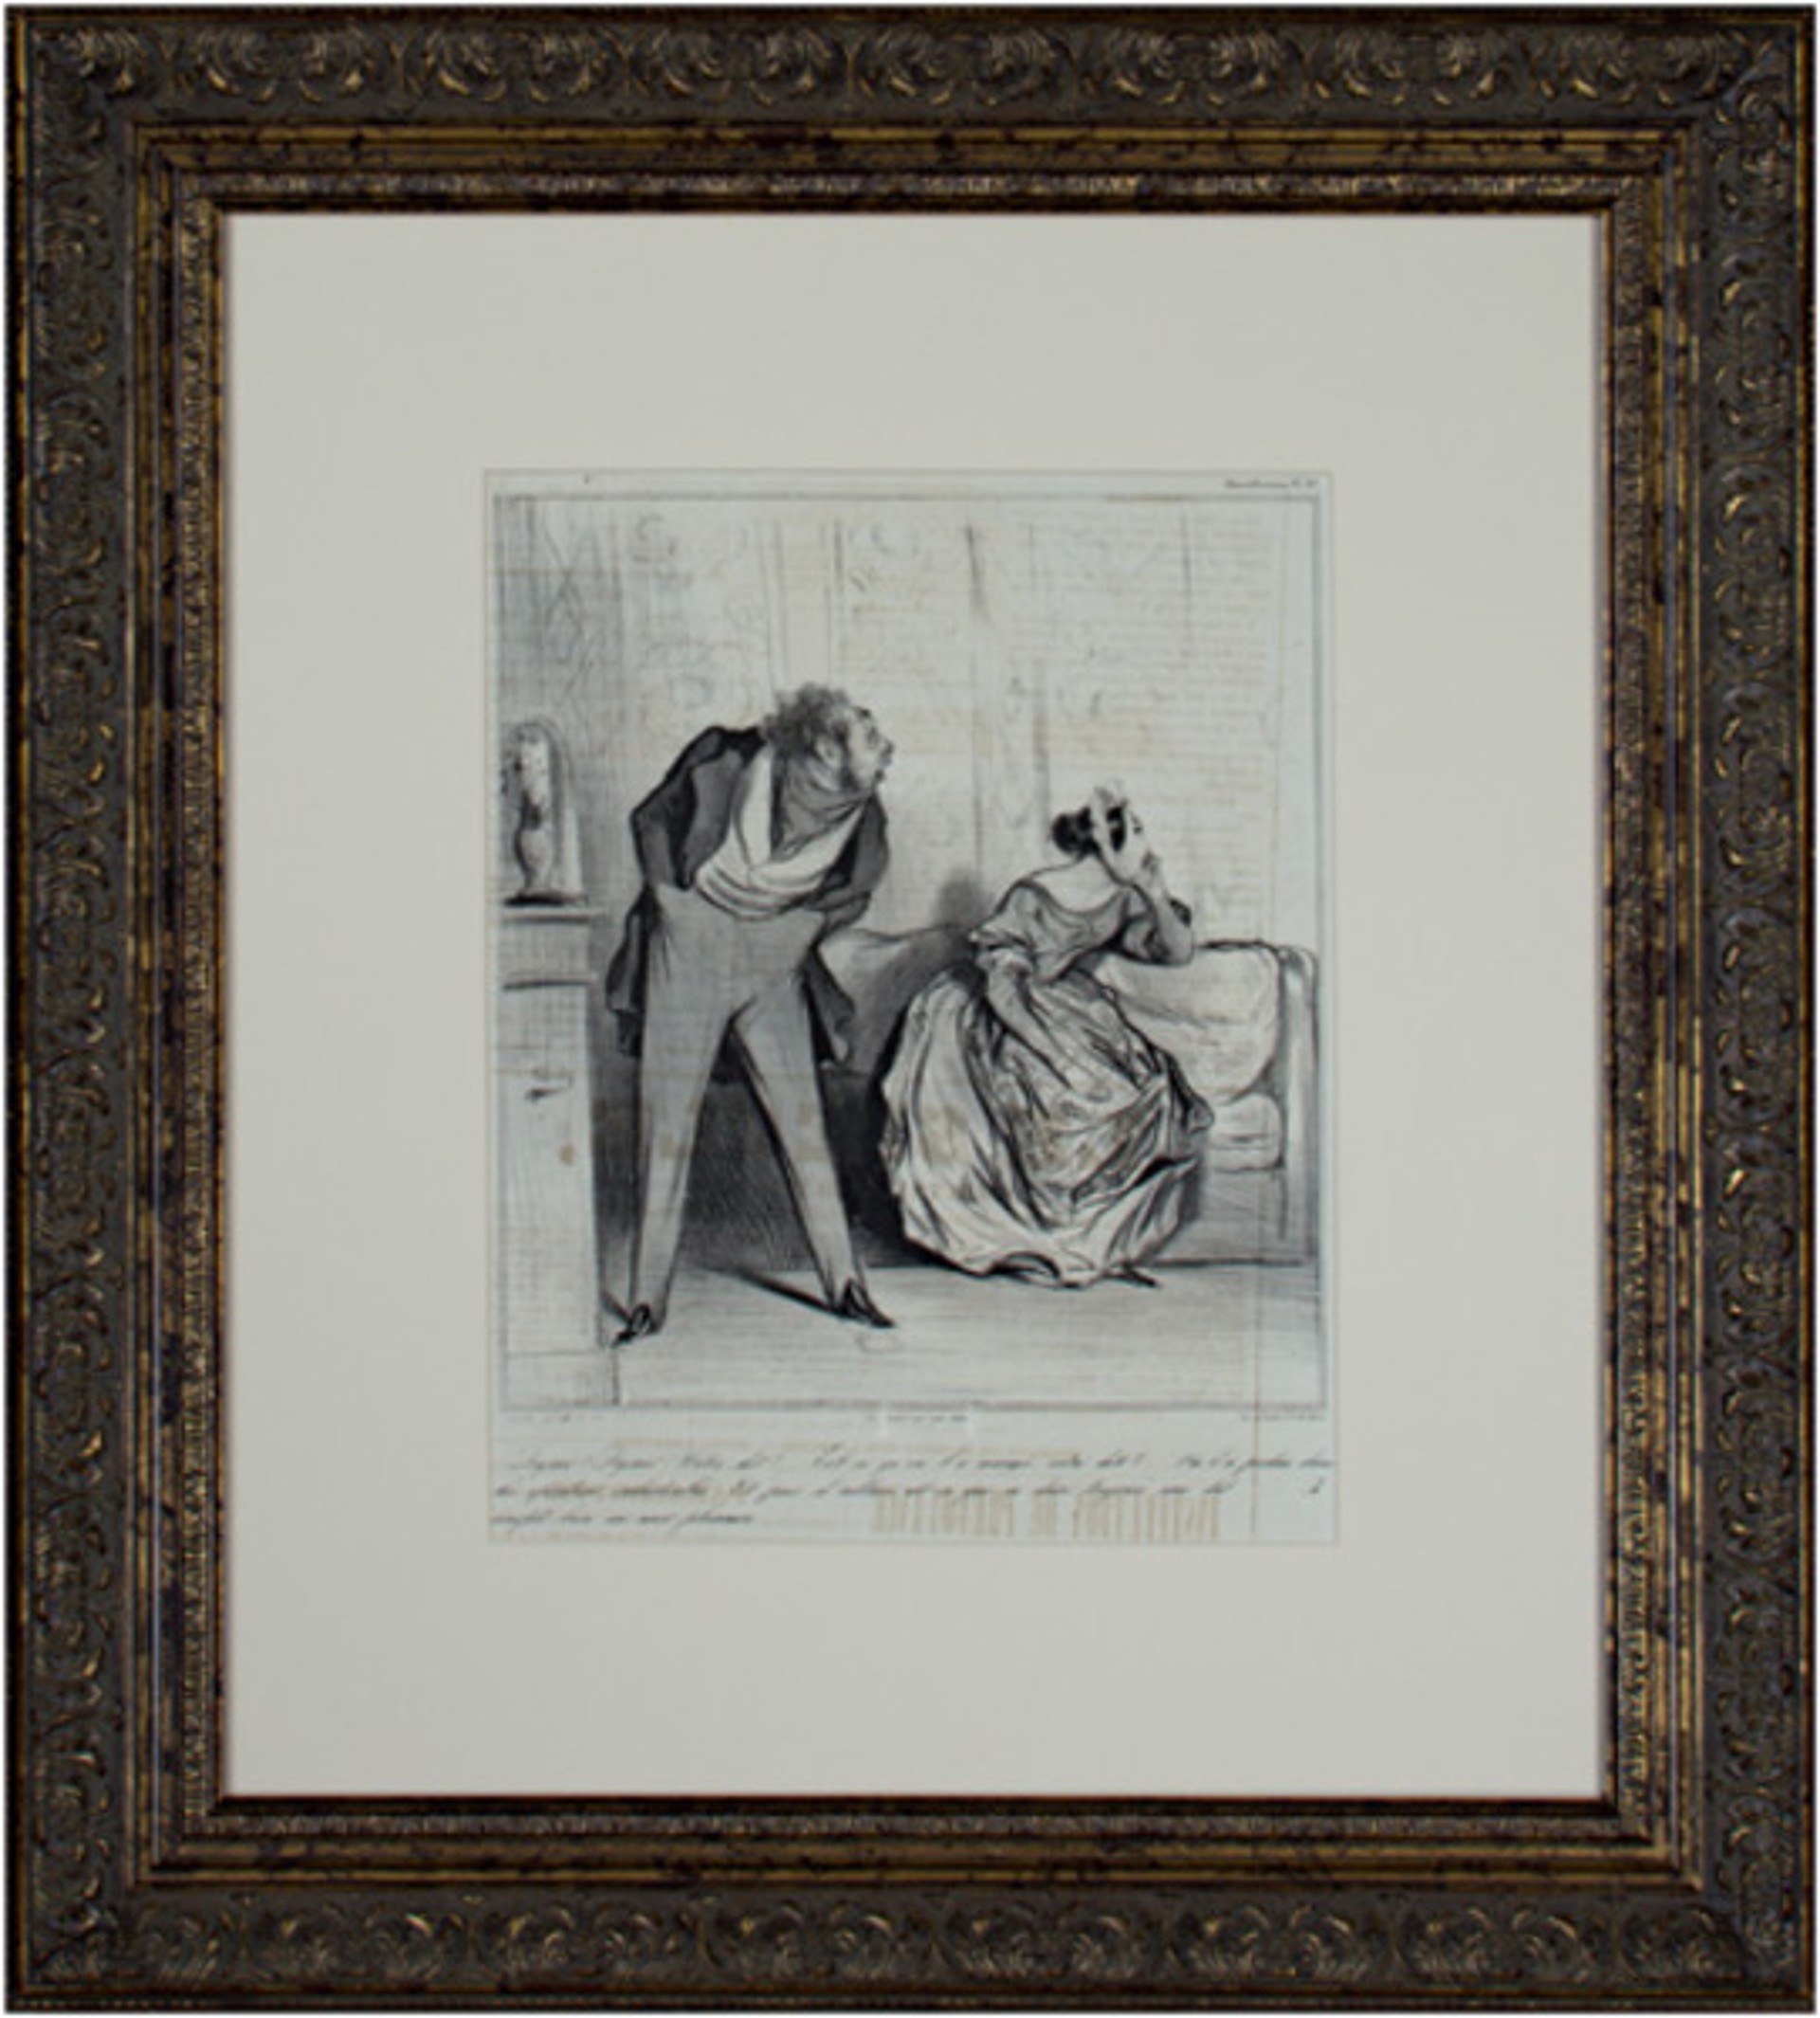 De Quoi! De Quoi! Votre Dot? by Honore Daumier